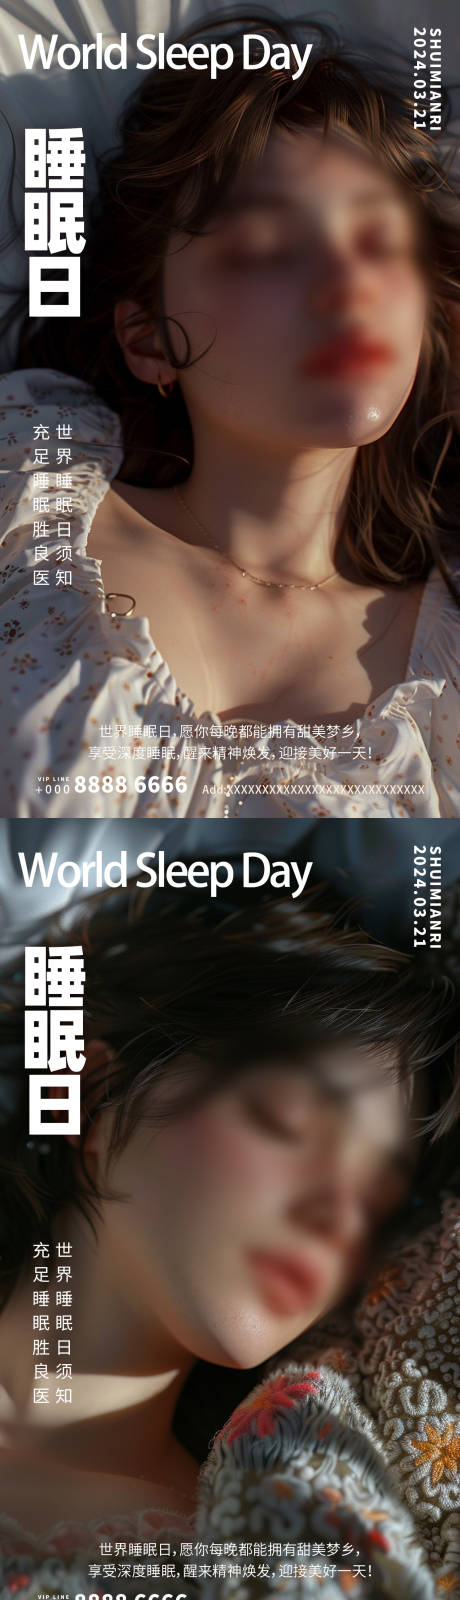 世界睡眠日温馨系列海报